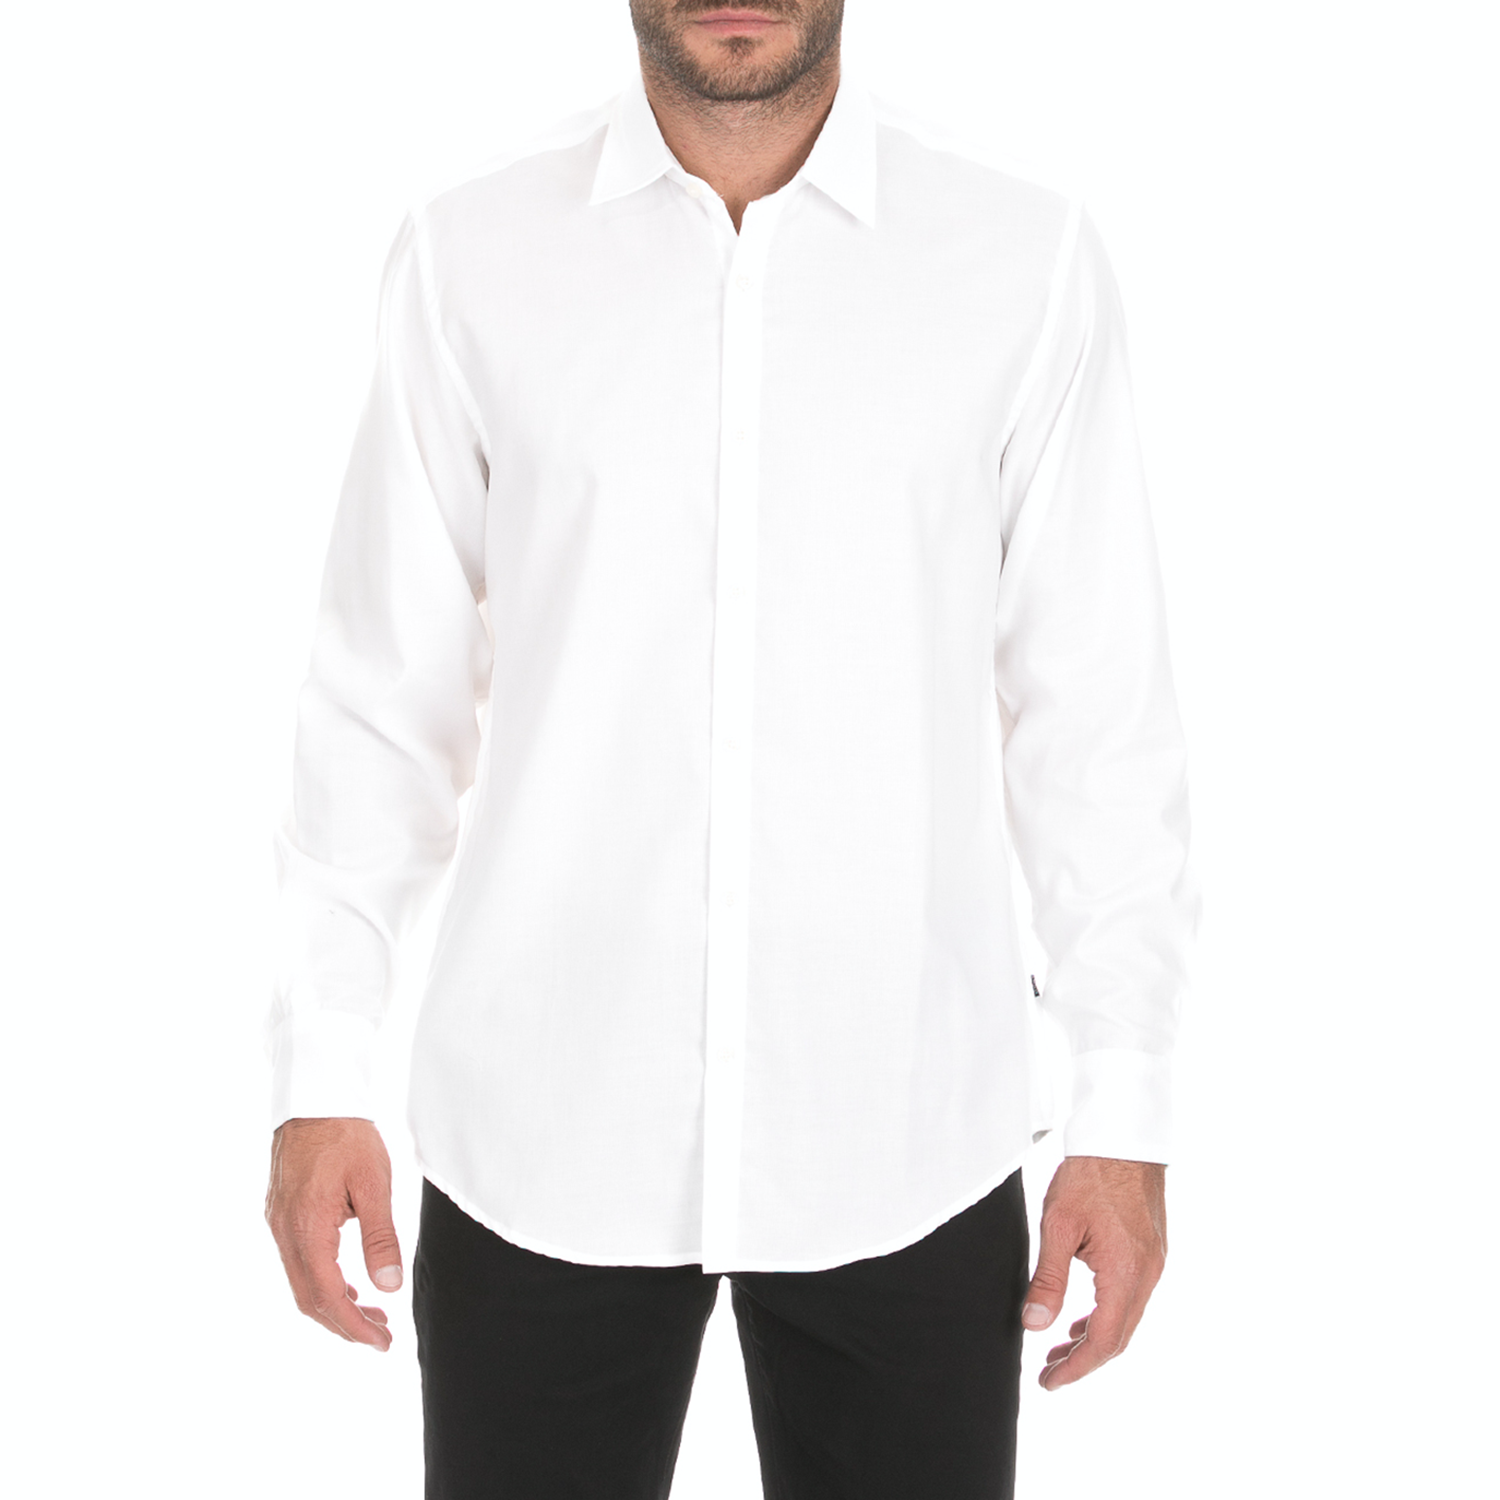 Ανδρικά/Ρούχα/Πουκάμισα/Μακρυμάνικα DORS - Ανδρικό μακρυμάνικο πουκάμισο DORS λευκό